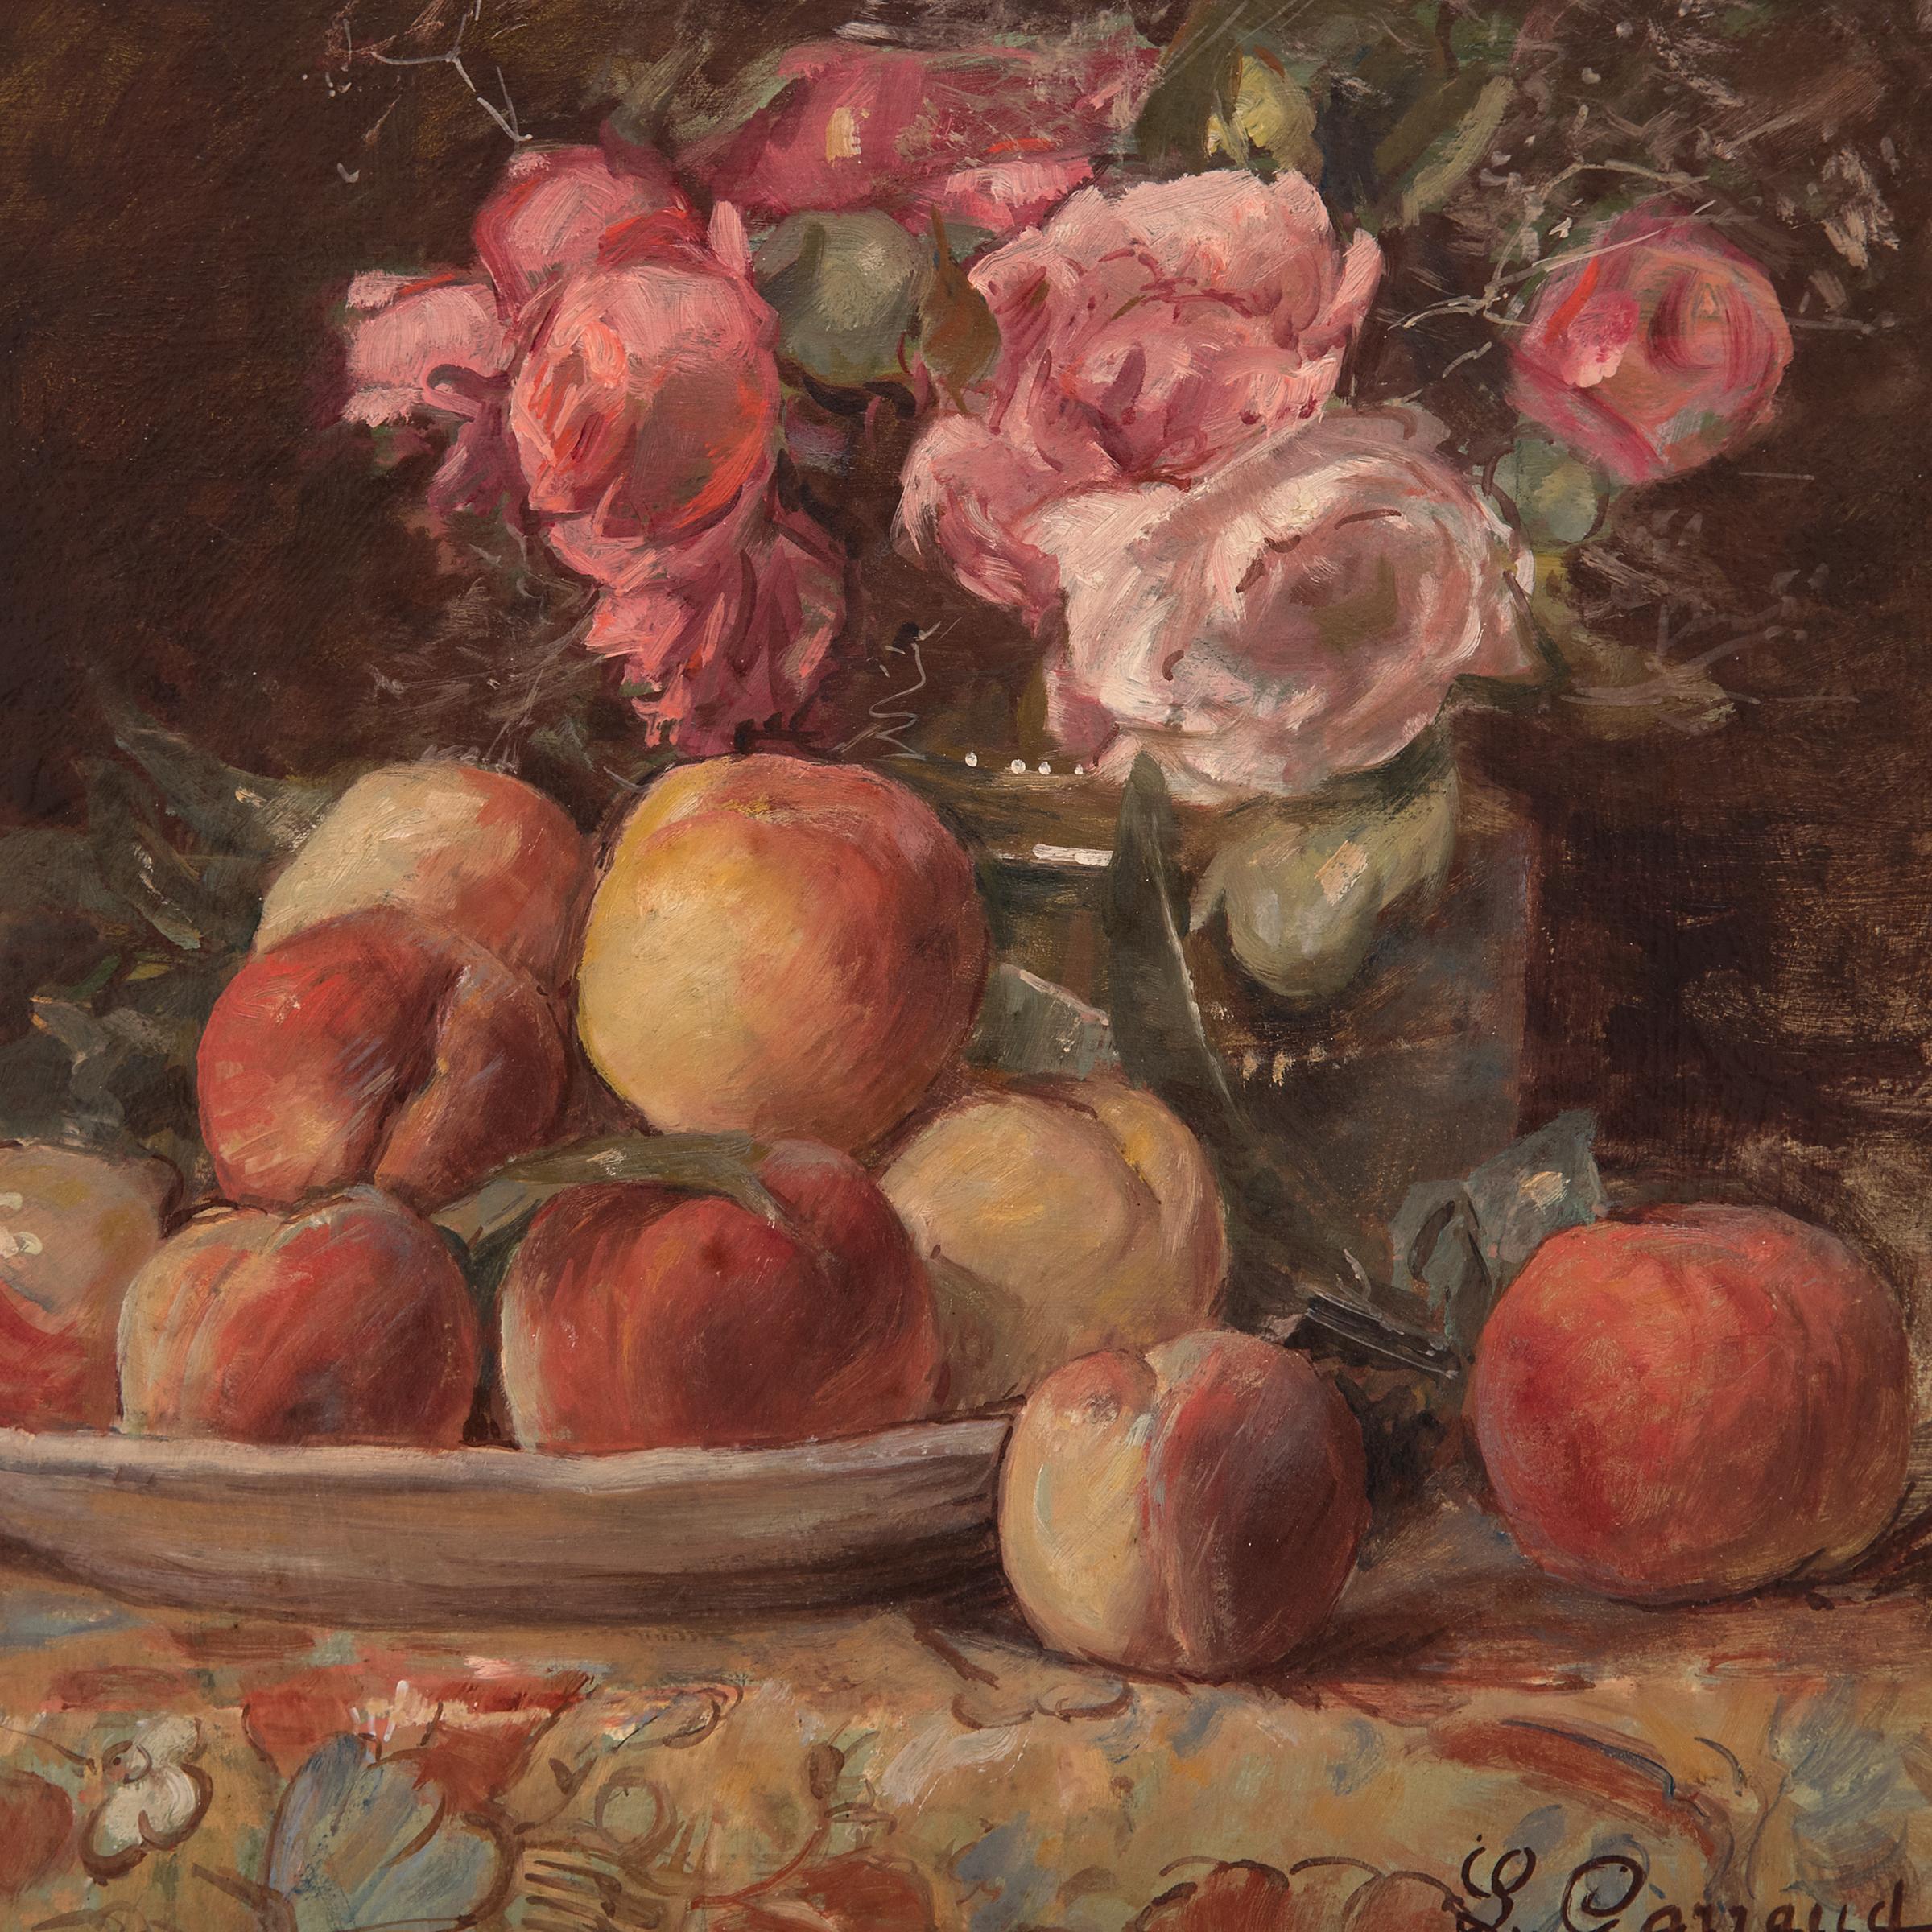 Dieses impressionistische Stillleben des französischen Malers Léon Garraud zeigt einen gedeckten Tisch mit einem Teller mit Pfirsichen und einer Vase mit rosa Pfingstrosen und zarten weißen Blumen. Die warme Farbpalette von Orange, Gelb und Rosa